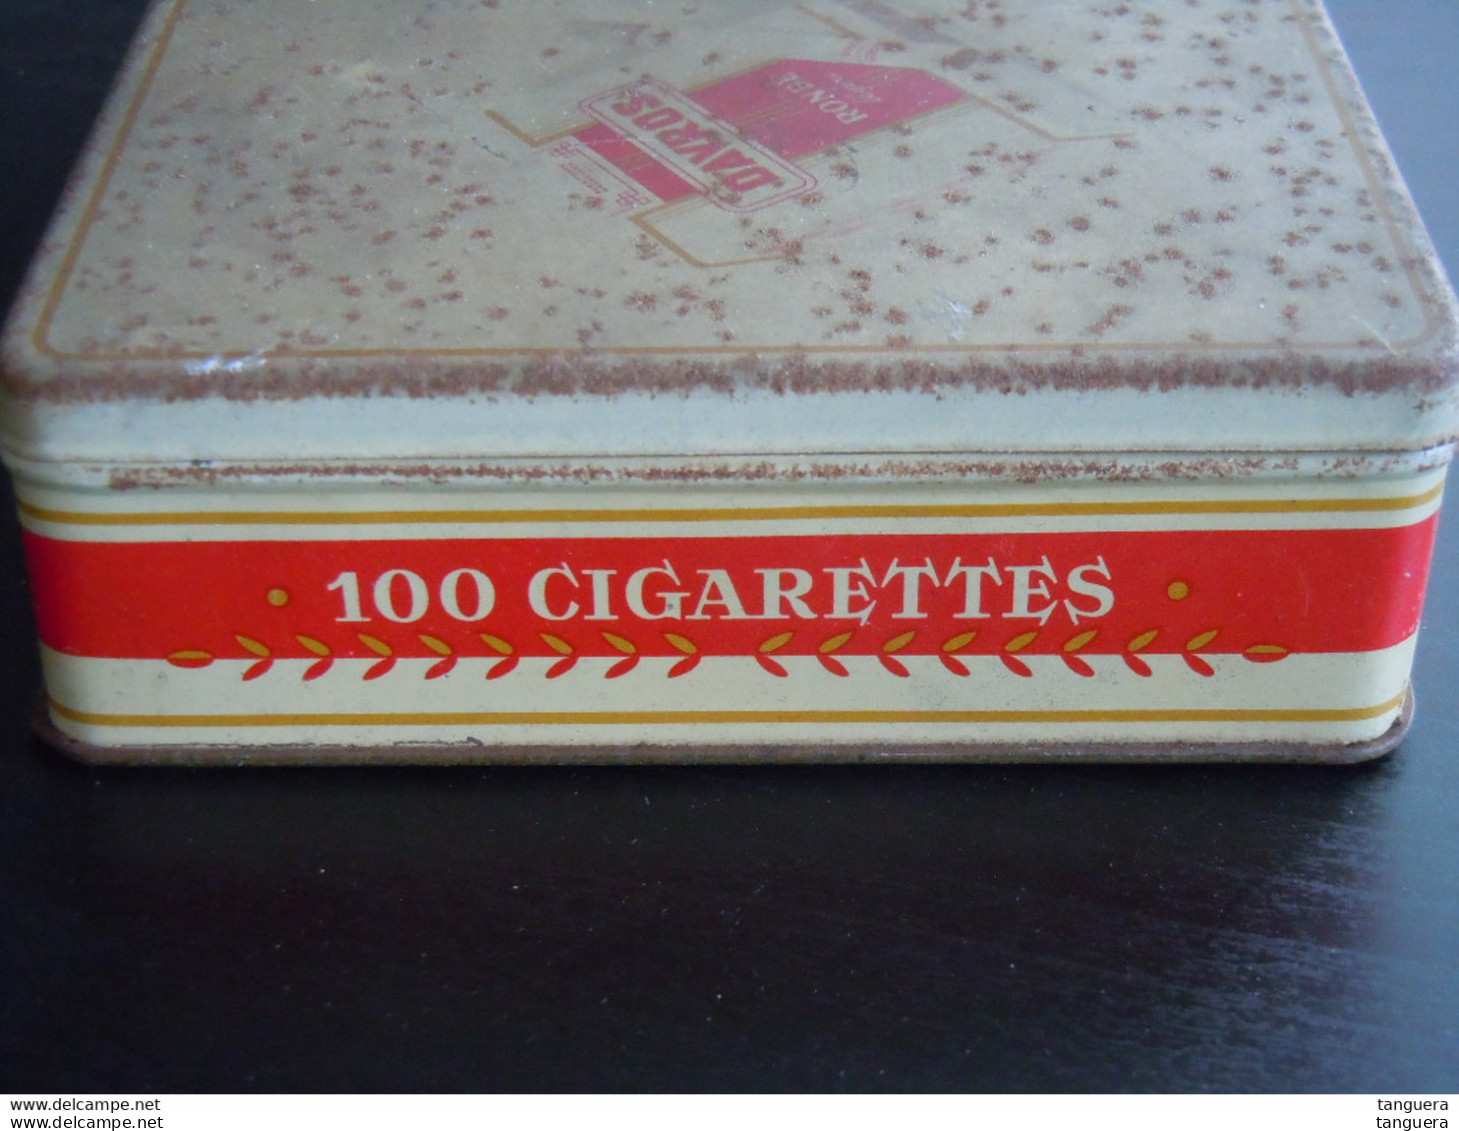 Davros Ronde légère 100 cigarettes boïte en metal doos blik sigaretten 14 x 11,8 x 3,6 cm abimée, beschadigd